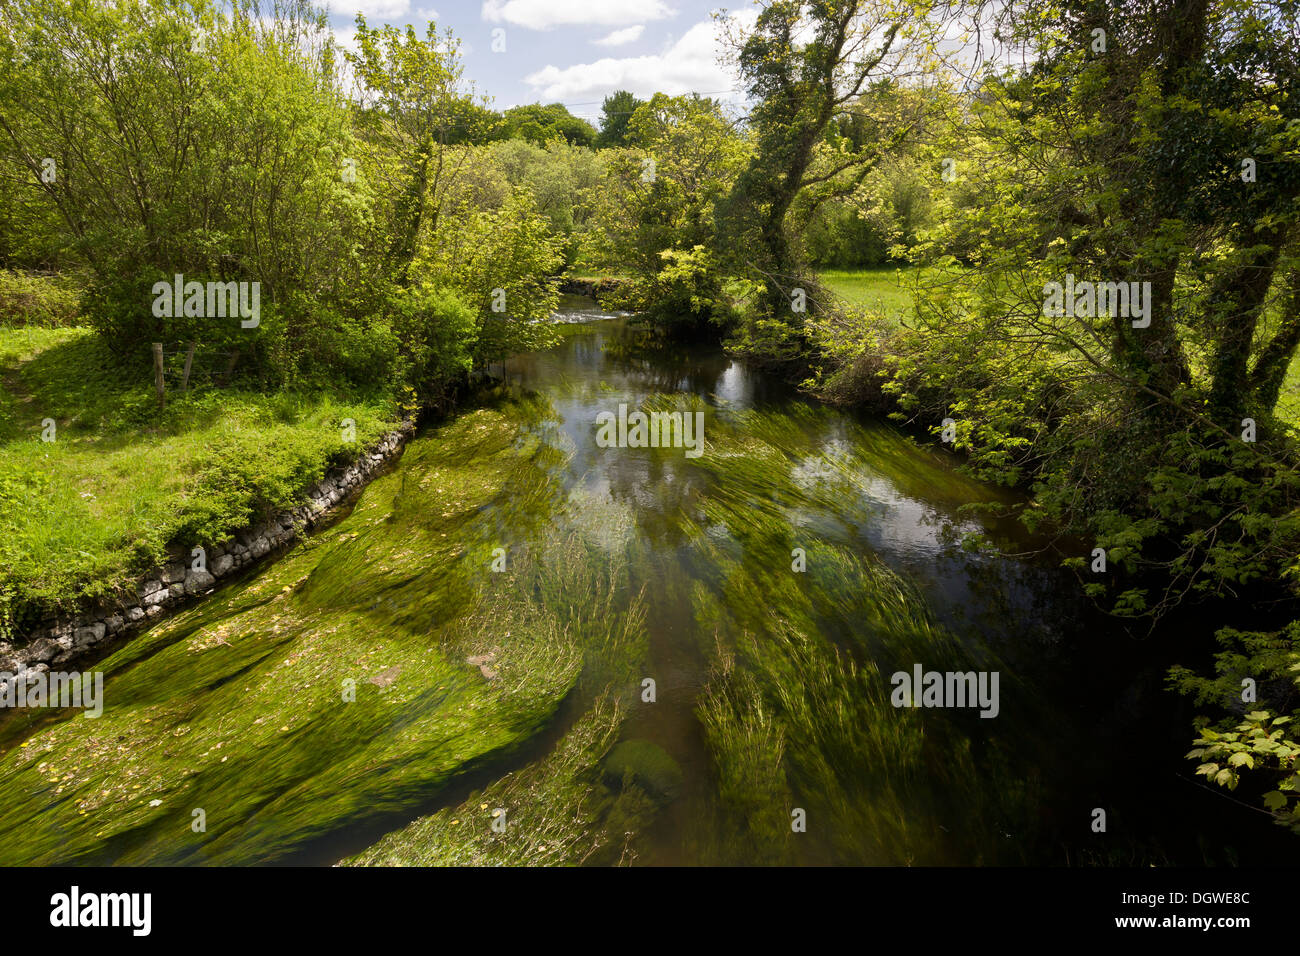 Ländliche Idylle - der Fluss Fergus, voller Wasser Crowfoot und andere Wasserpflanzen unter Lough Inchiquin, Co. Clare, Irland. Stockfoto